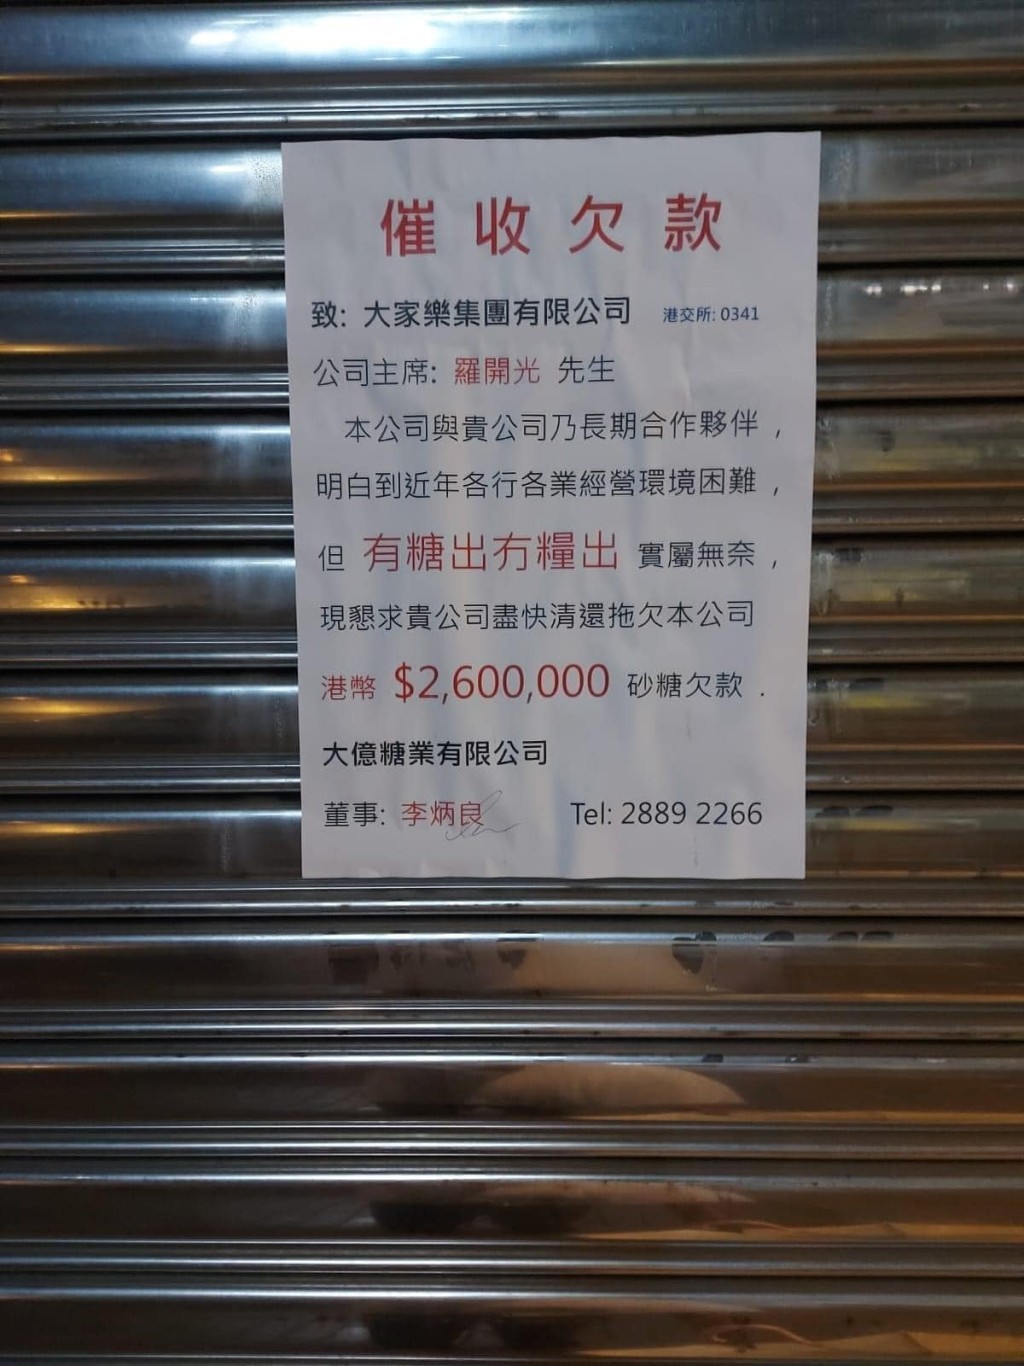 網上流傳一張大家樂集團被「催收欠款」告示，指大家樂集團拖欠大億糖業有限公司260萬港元的「砂糖欠款」。香港突發事故報料區FB圖片